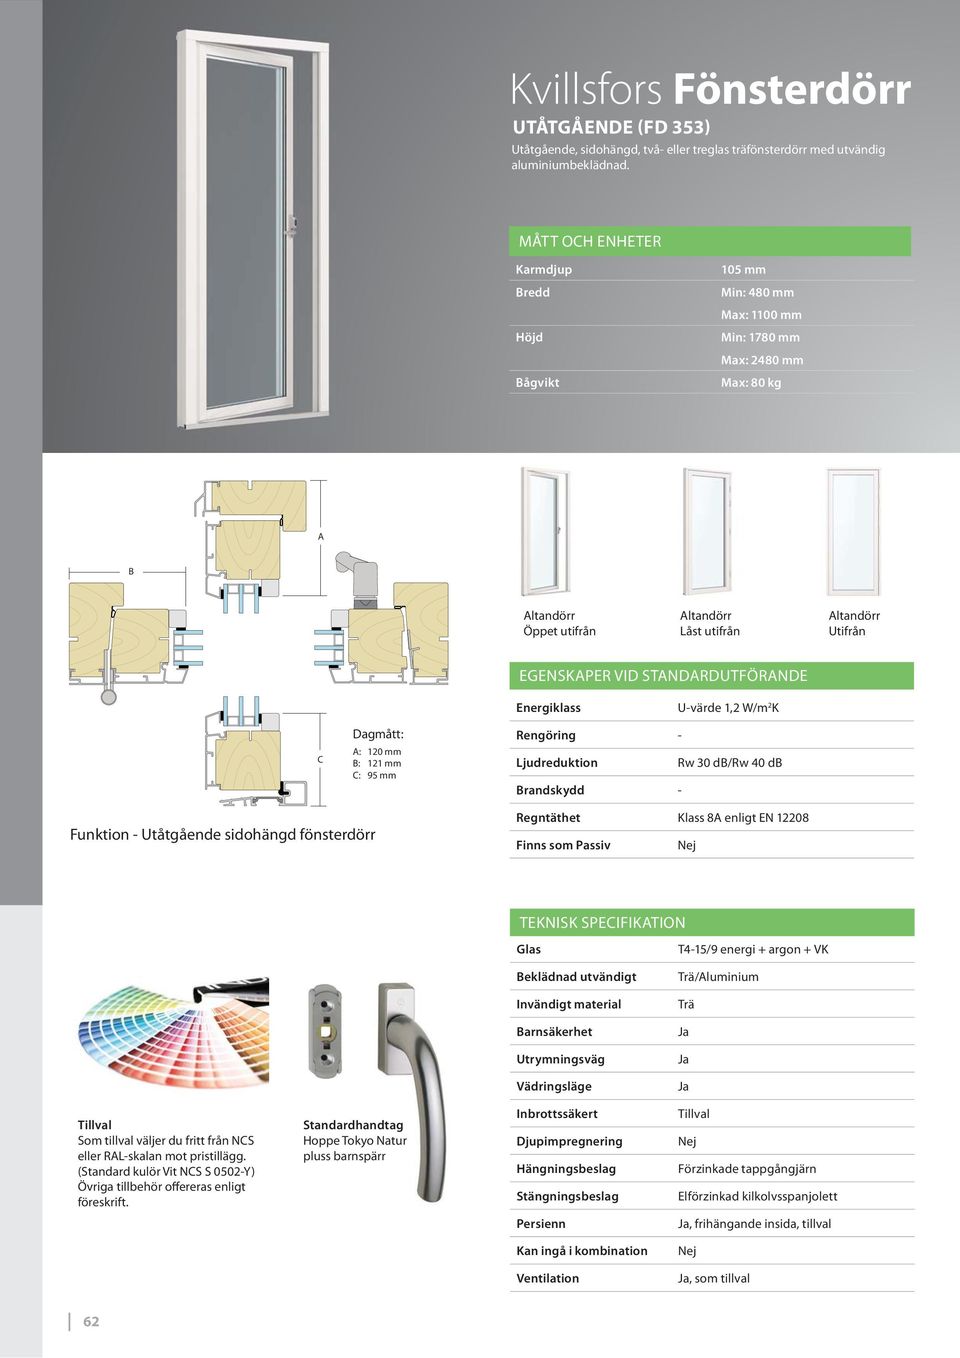 d/rw 40 d randskydd - Funktion - Utåtgående sidohängd fönsterdörr Regntäthet Klass 8 enligt EN 12208 TEKNISK SPEIFIKTION T4-15/9 energi + argon + VK eklädnad utvändigt /luminium